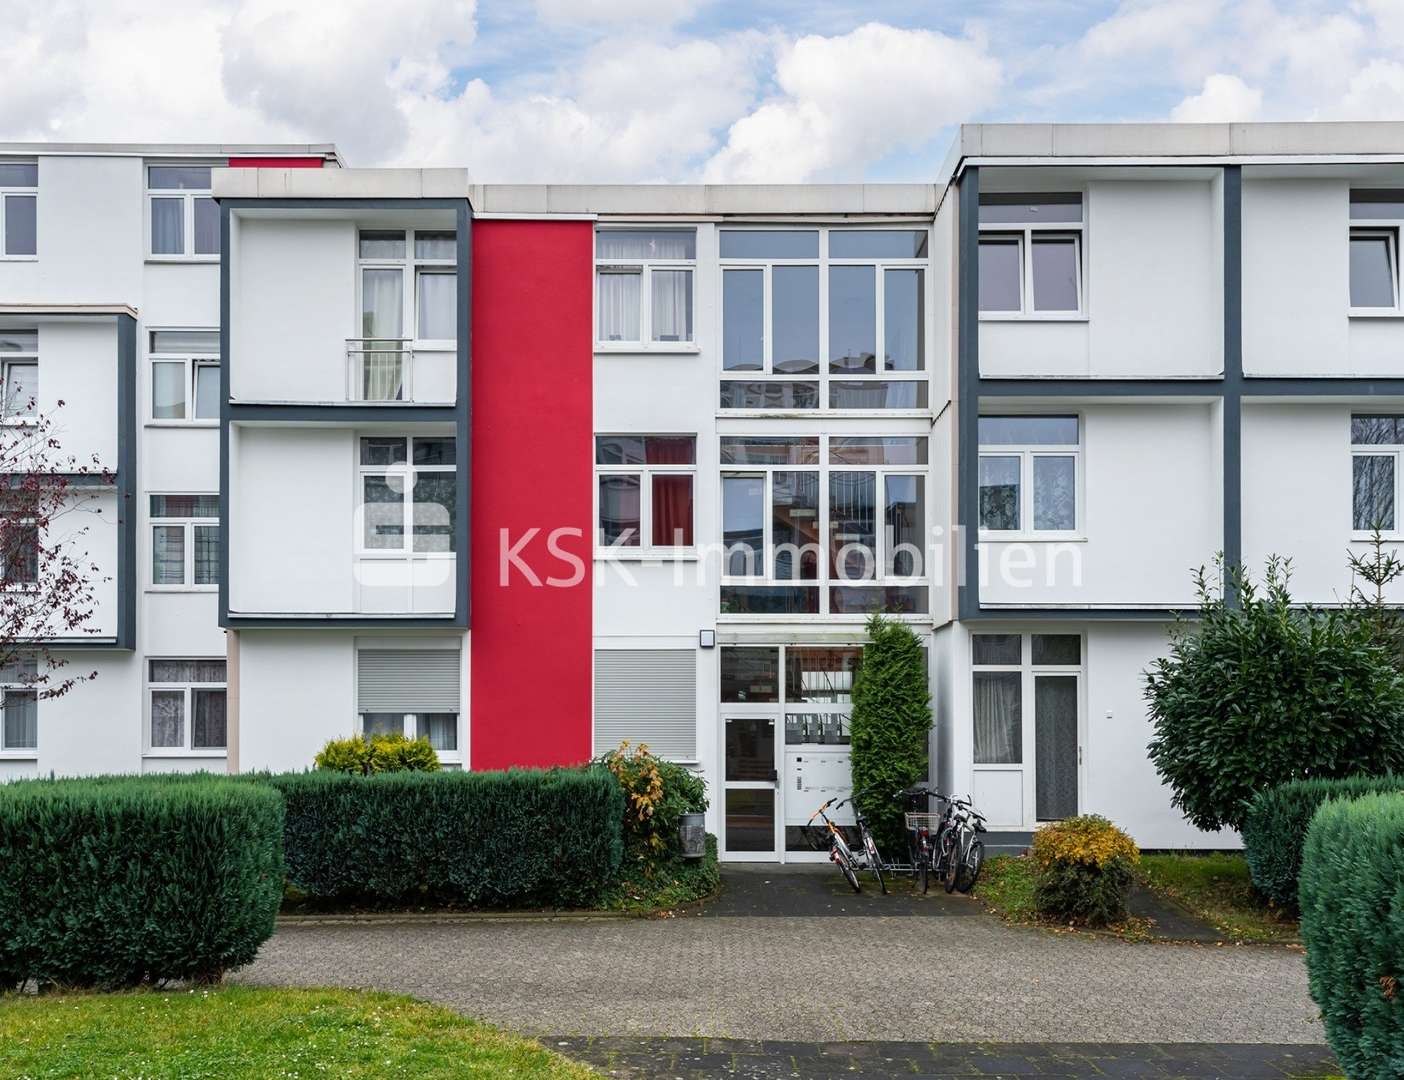 93264 Außenansicht - Etagenwohnung in 53125 Bonn / Brüser Berg mit 103m² günstig kaufen